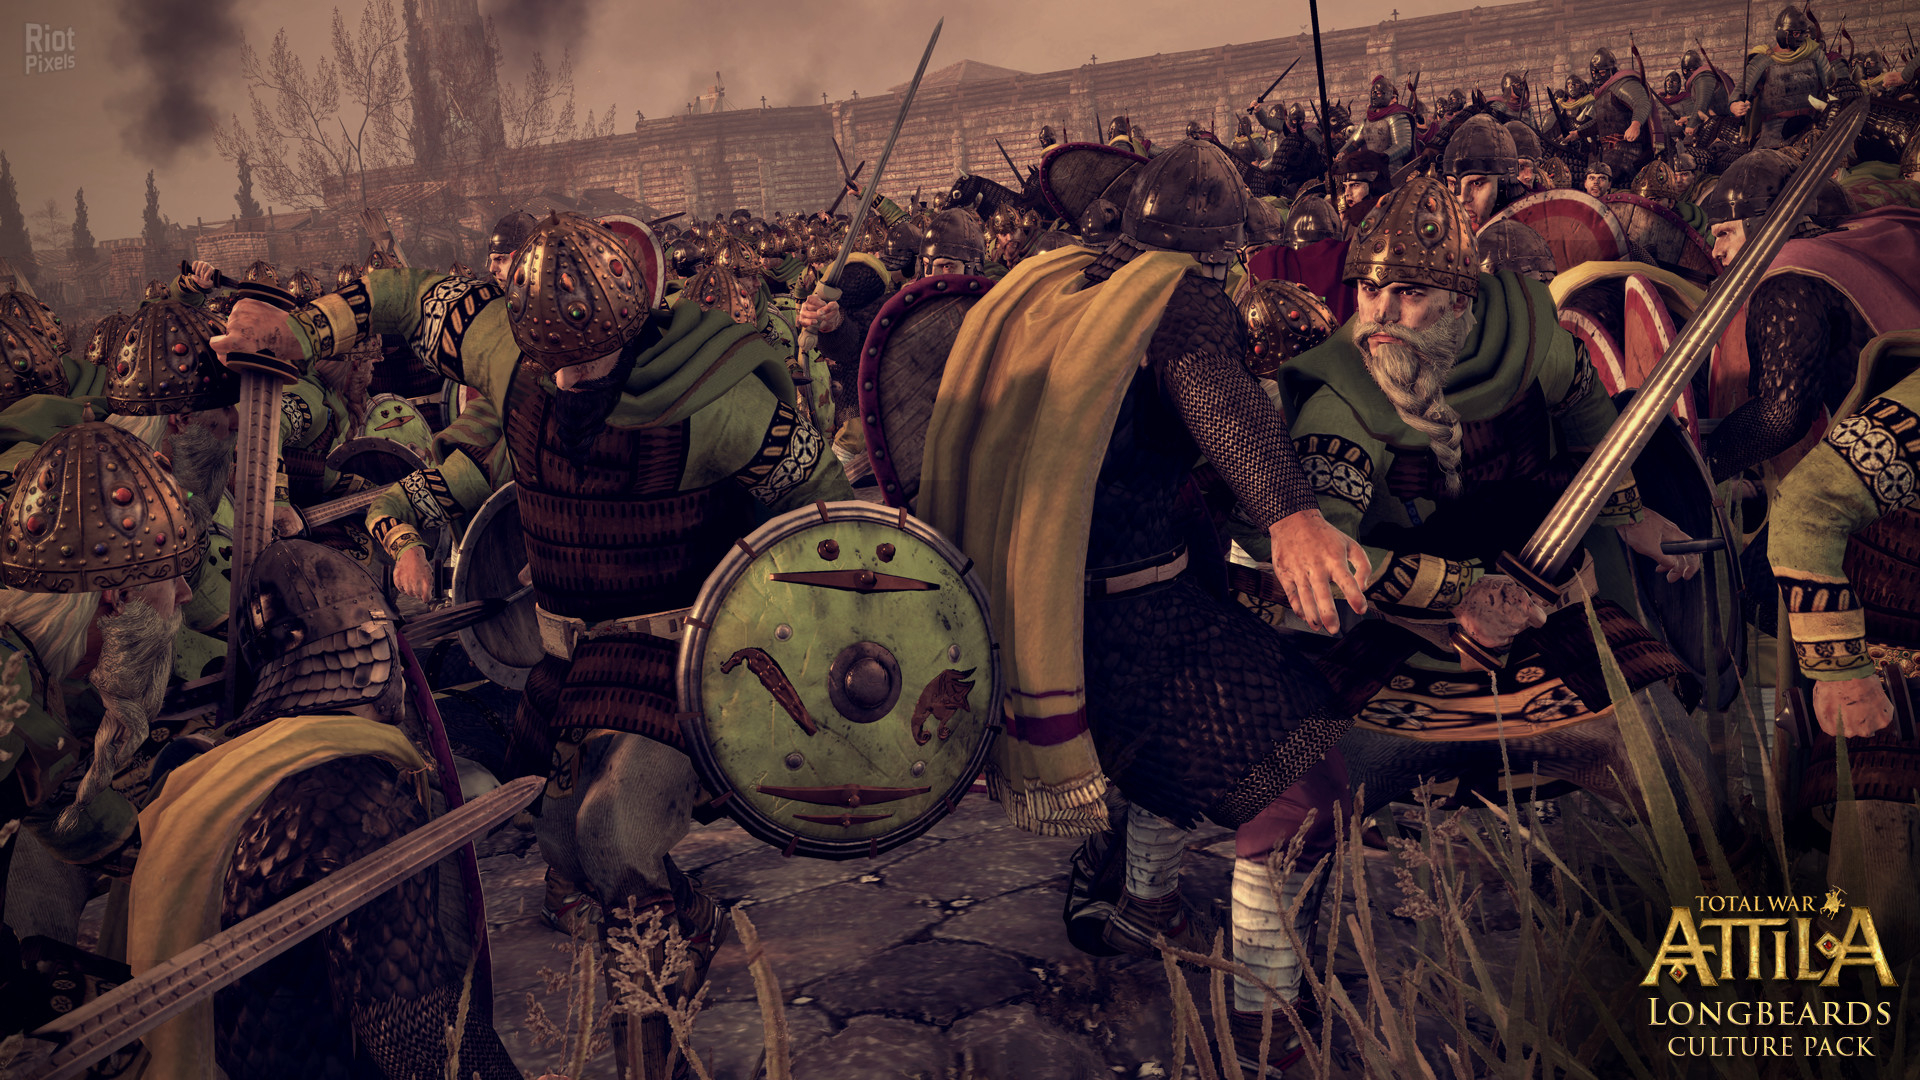 1920x1080 Total War: Attila Longbeards Culture Pack game screenshots at Riot Pixels, images